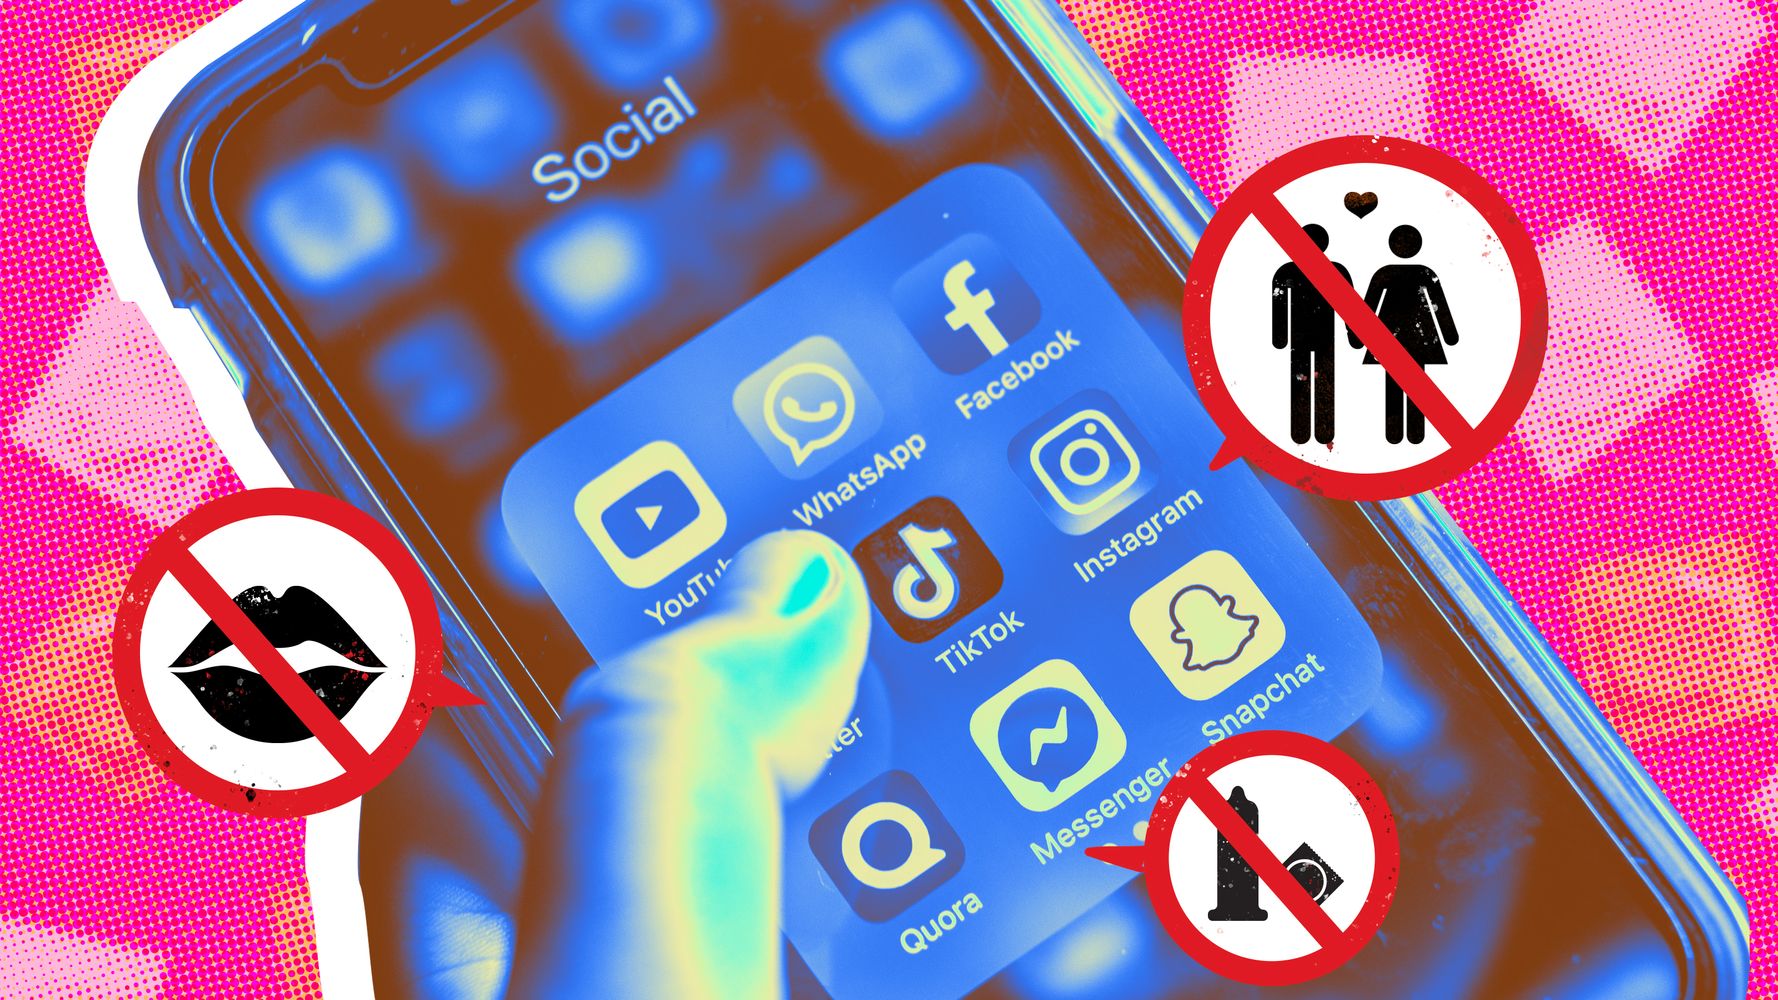 معالجة المحتوى الإباحي والفاحش على وسائل التواصل الاجتماعي في المغرب: المقاربات والتدابير القانونية